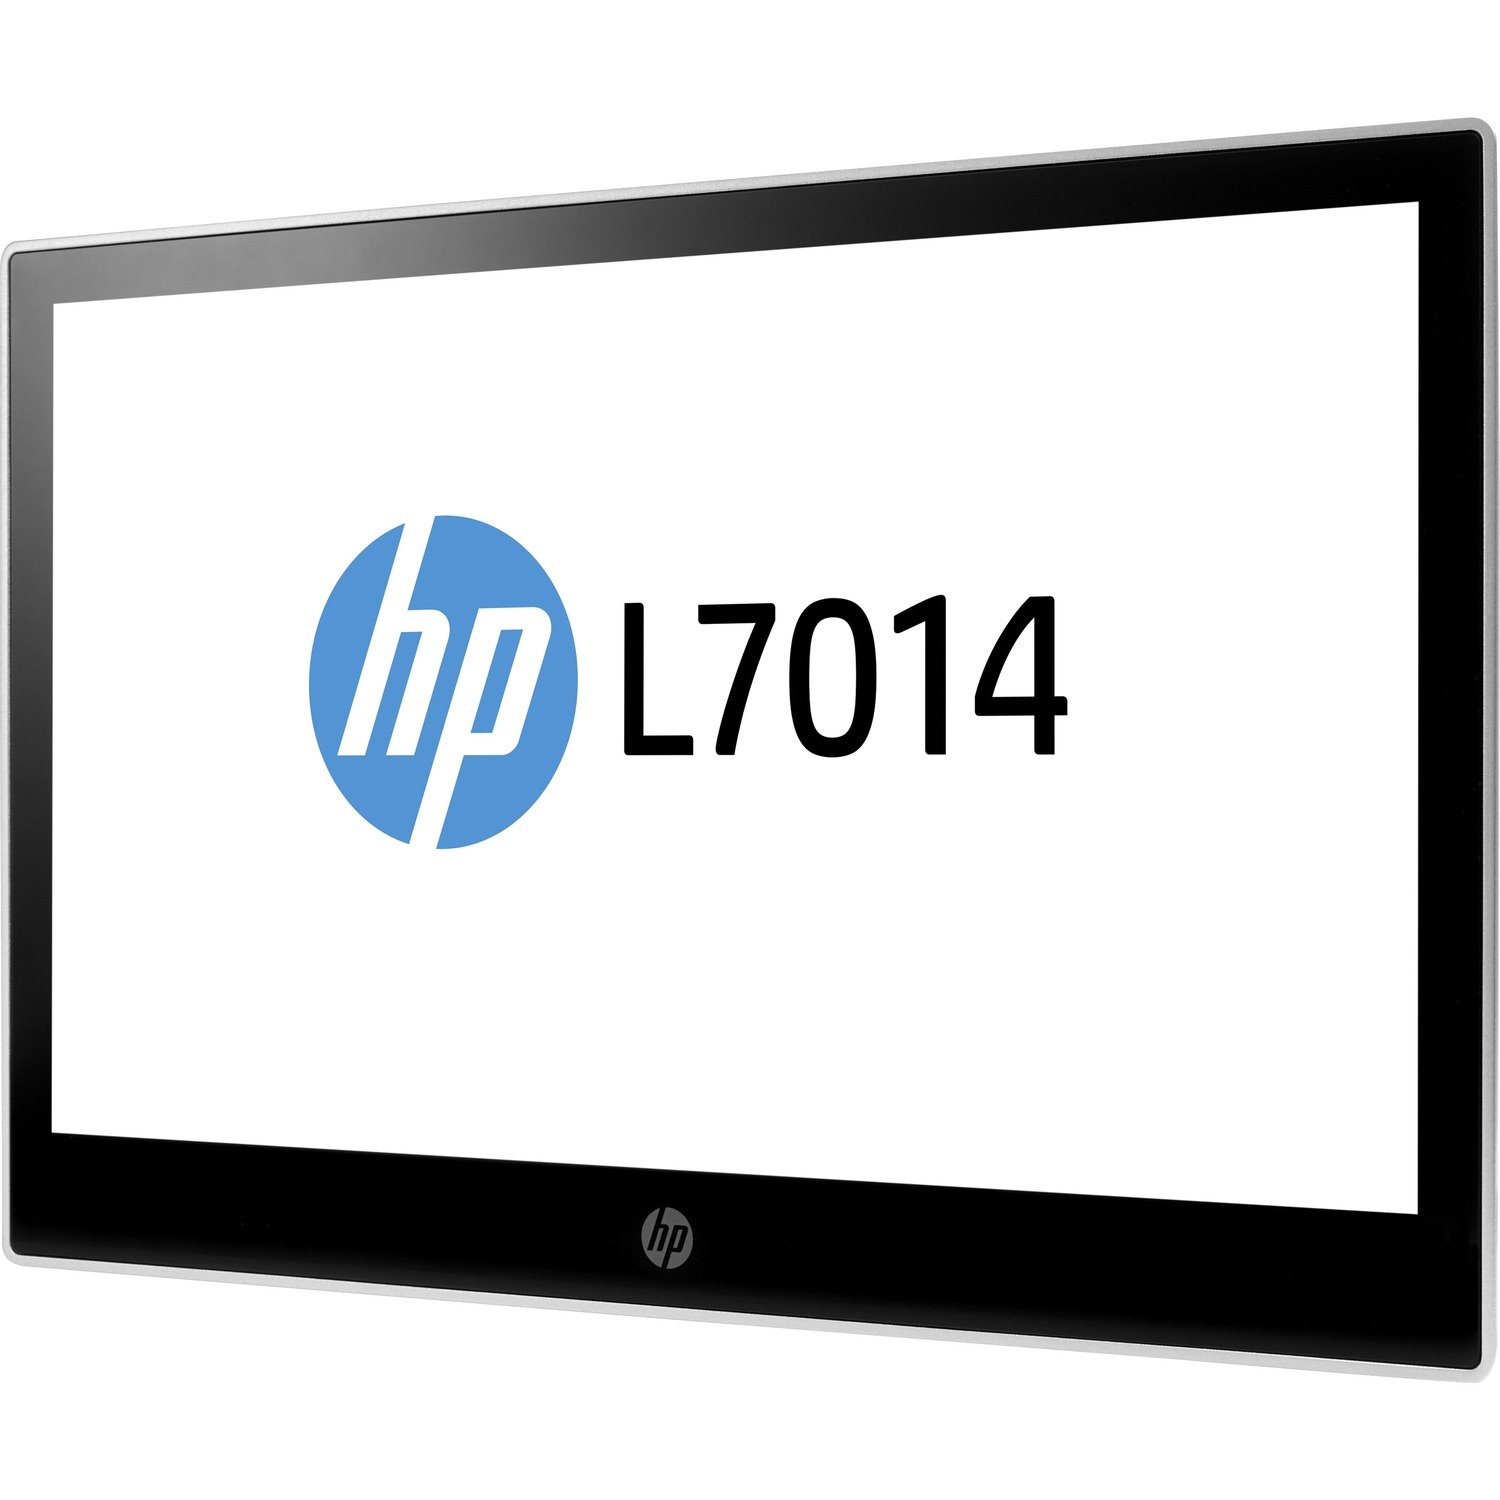 HP L7014 14" WXGA LED LCD Monitor - 16:9 - Black, Asteroid